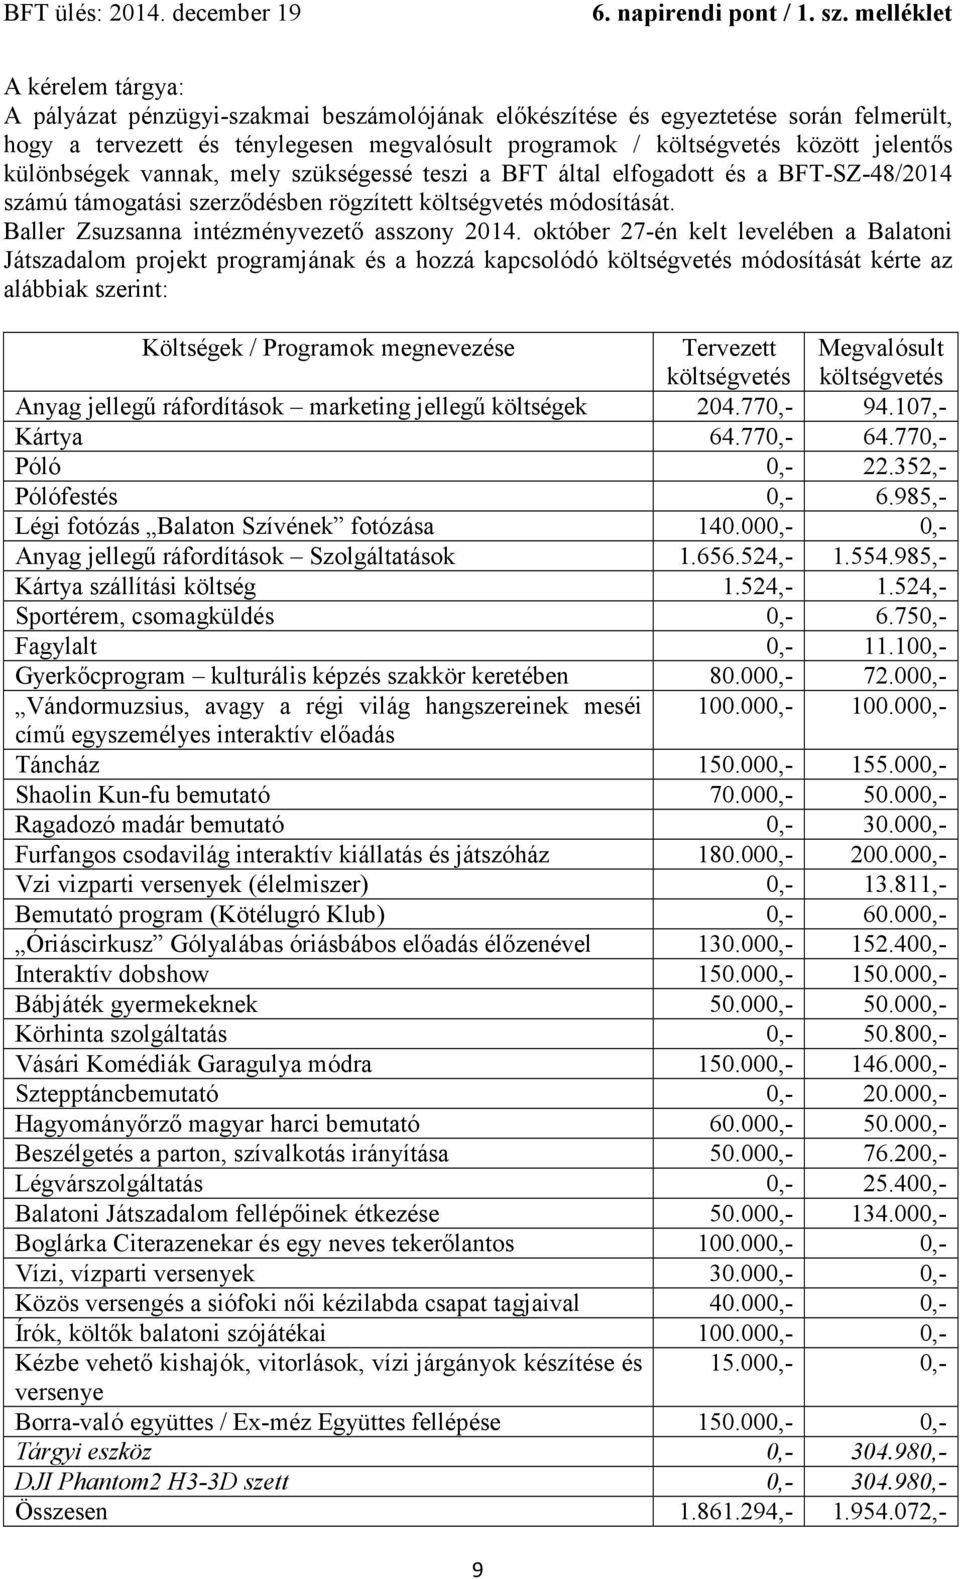 október 27-én kelt levelében a Balatoni Játszadalom projekt programjának és a hozzá kapcsolódó költségvetés módosítását kérte az alábbiak szerint: Költségek / Programok megnevezése Tervezett